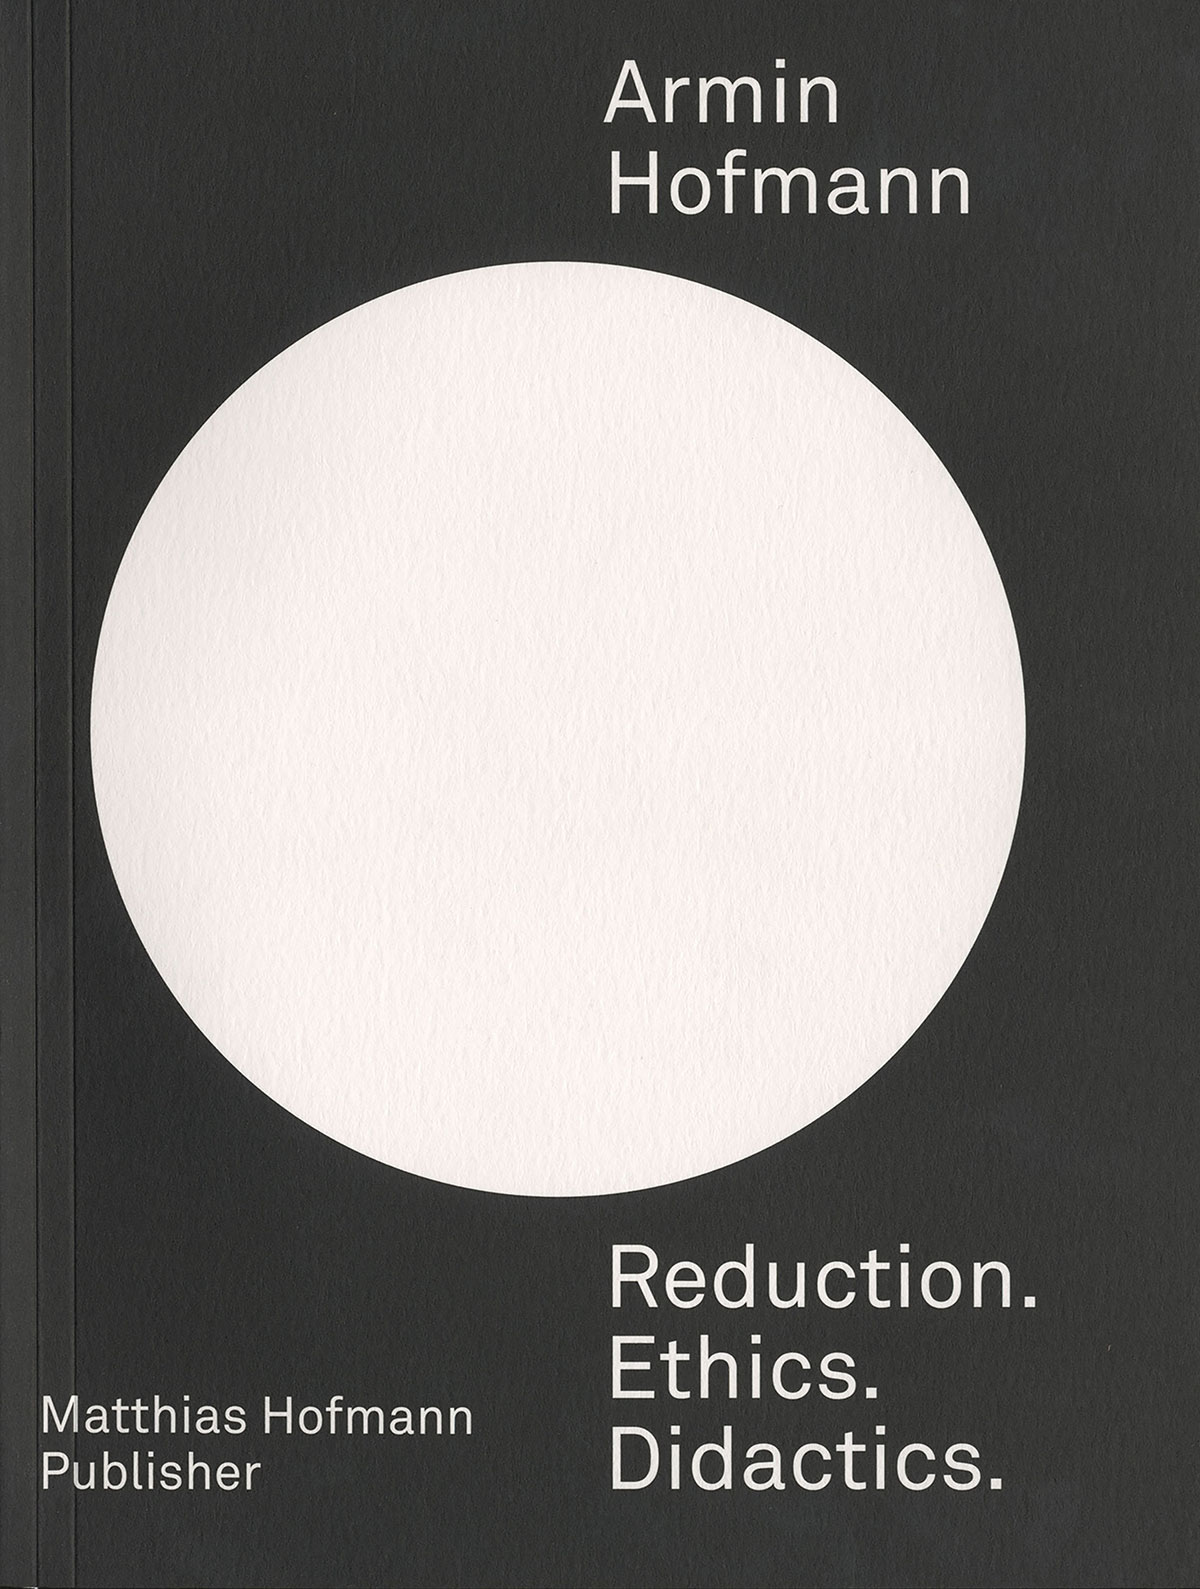 Armin Hofmann—Reduction. Ethics. Didactics.